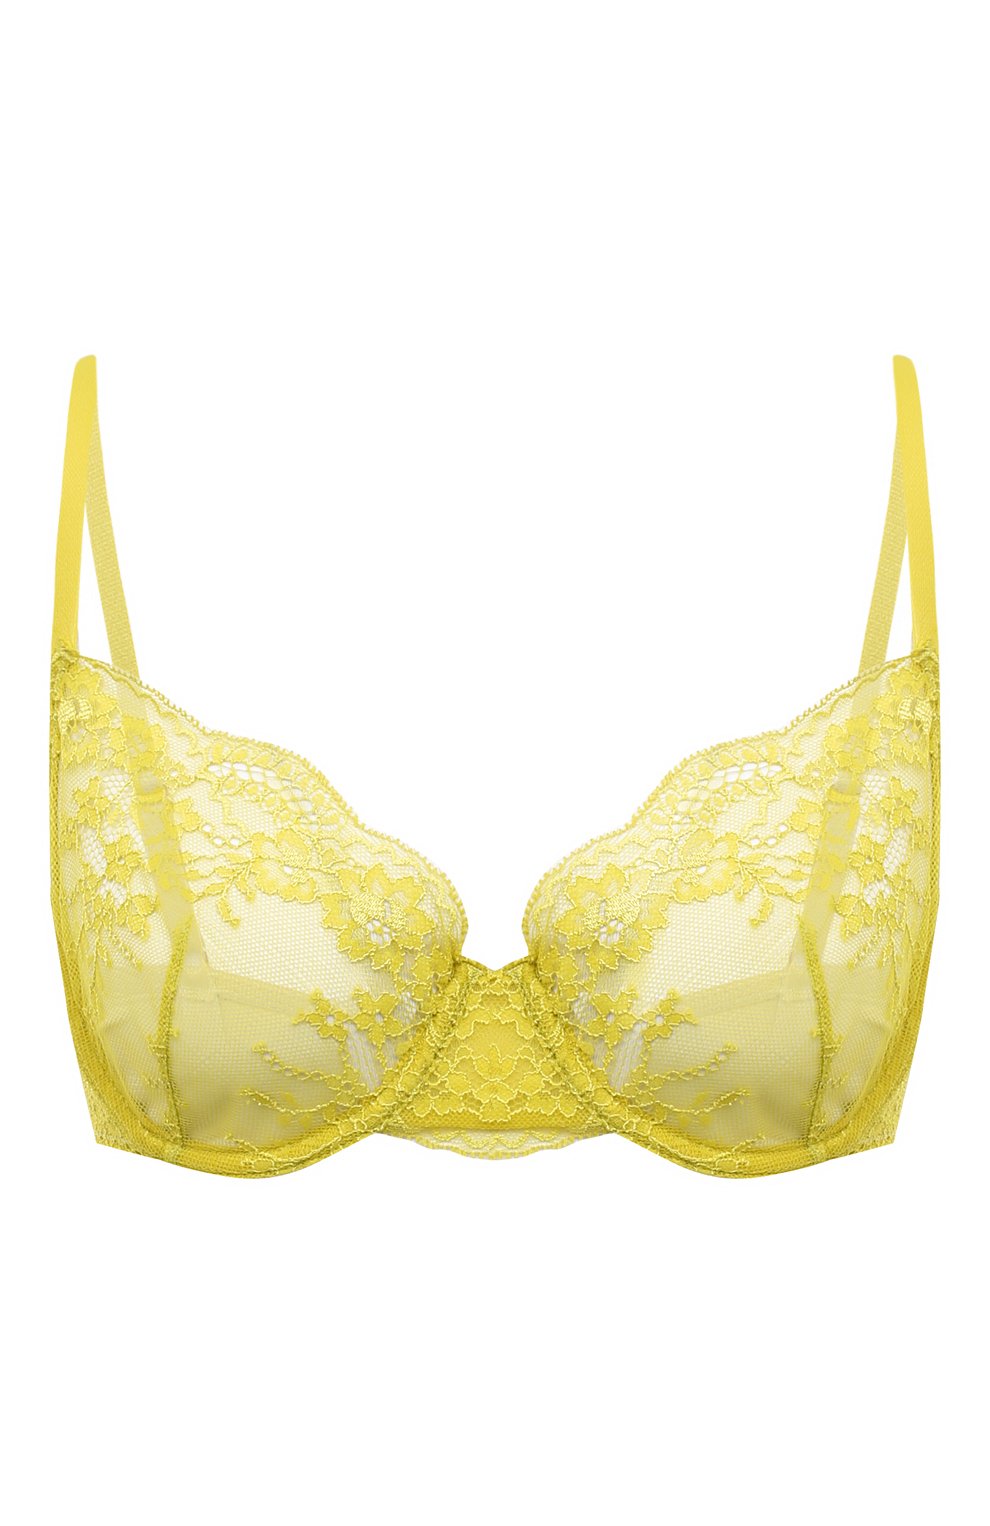 Желтое женское нижнее белье — купить в интернет-магазине Ламода